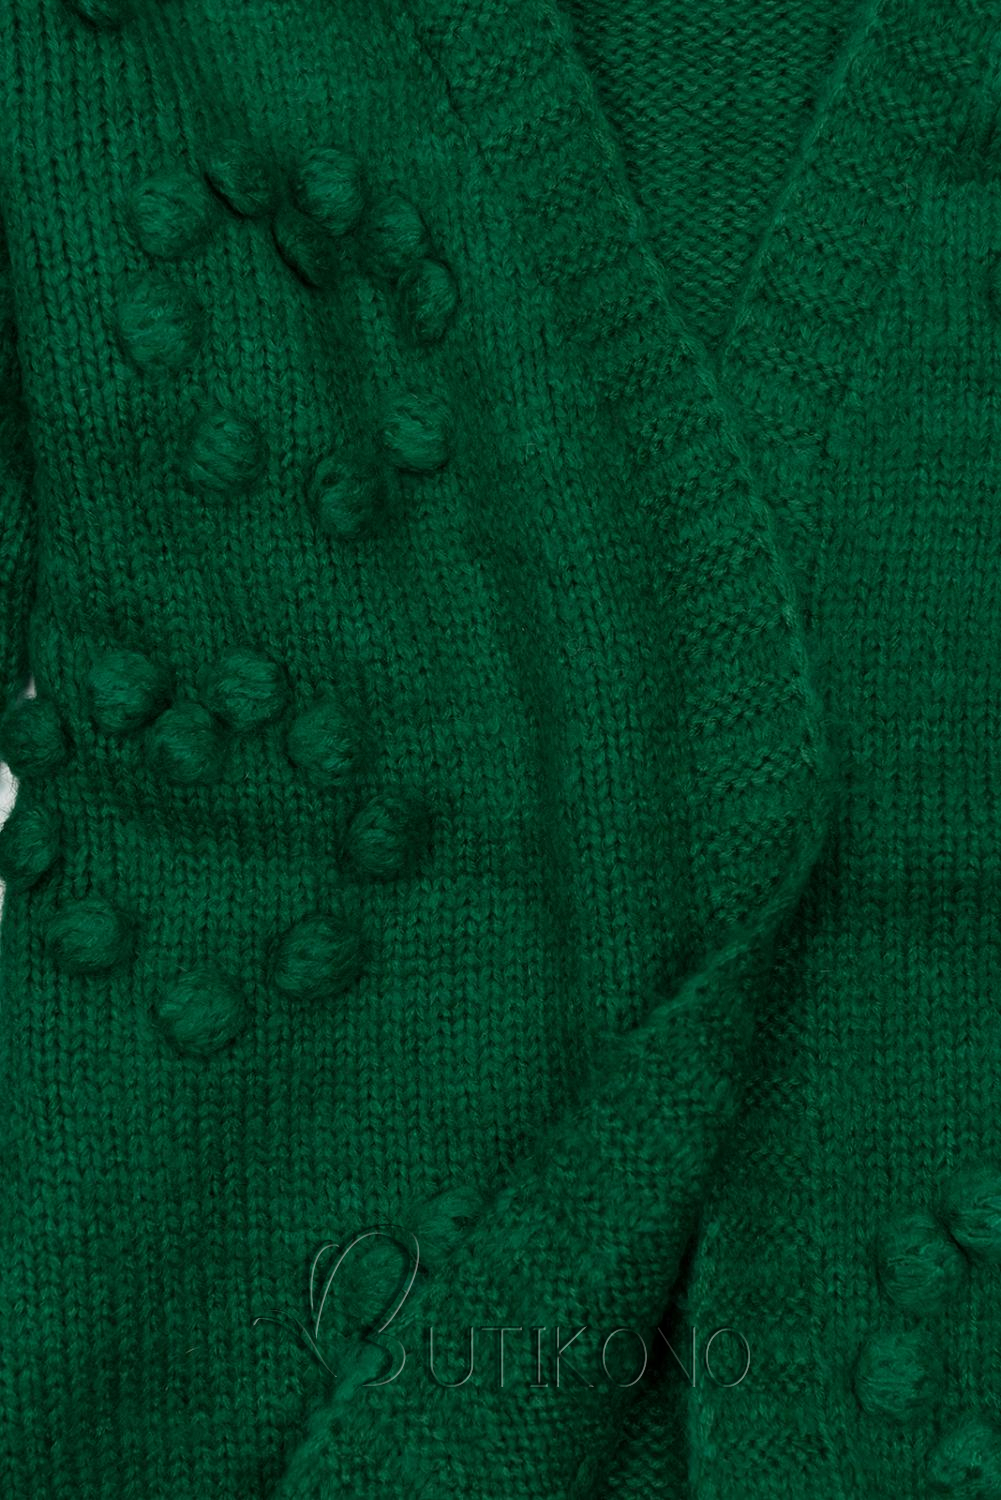 Zelený pletený svetr s bambulkami